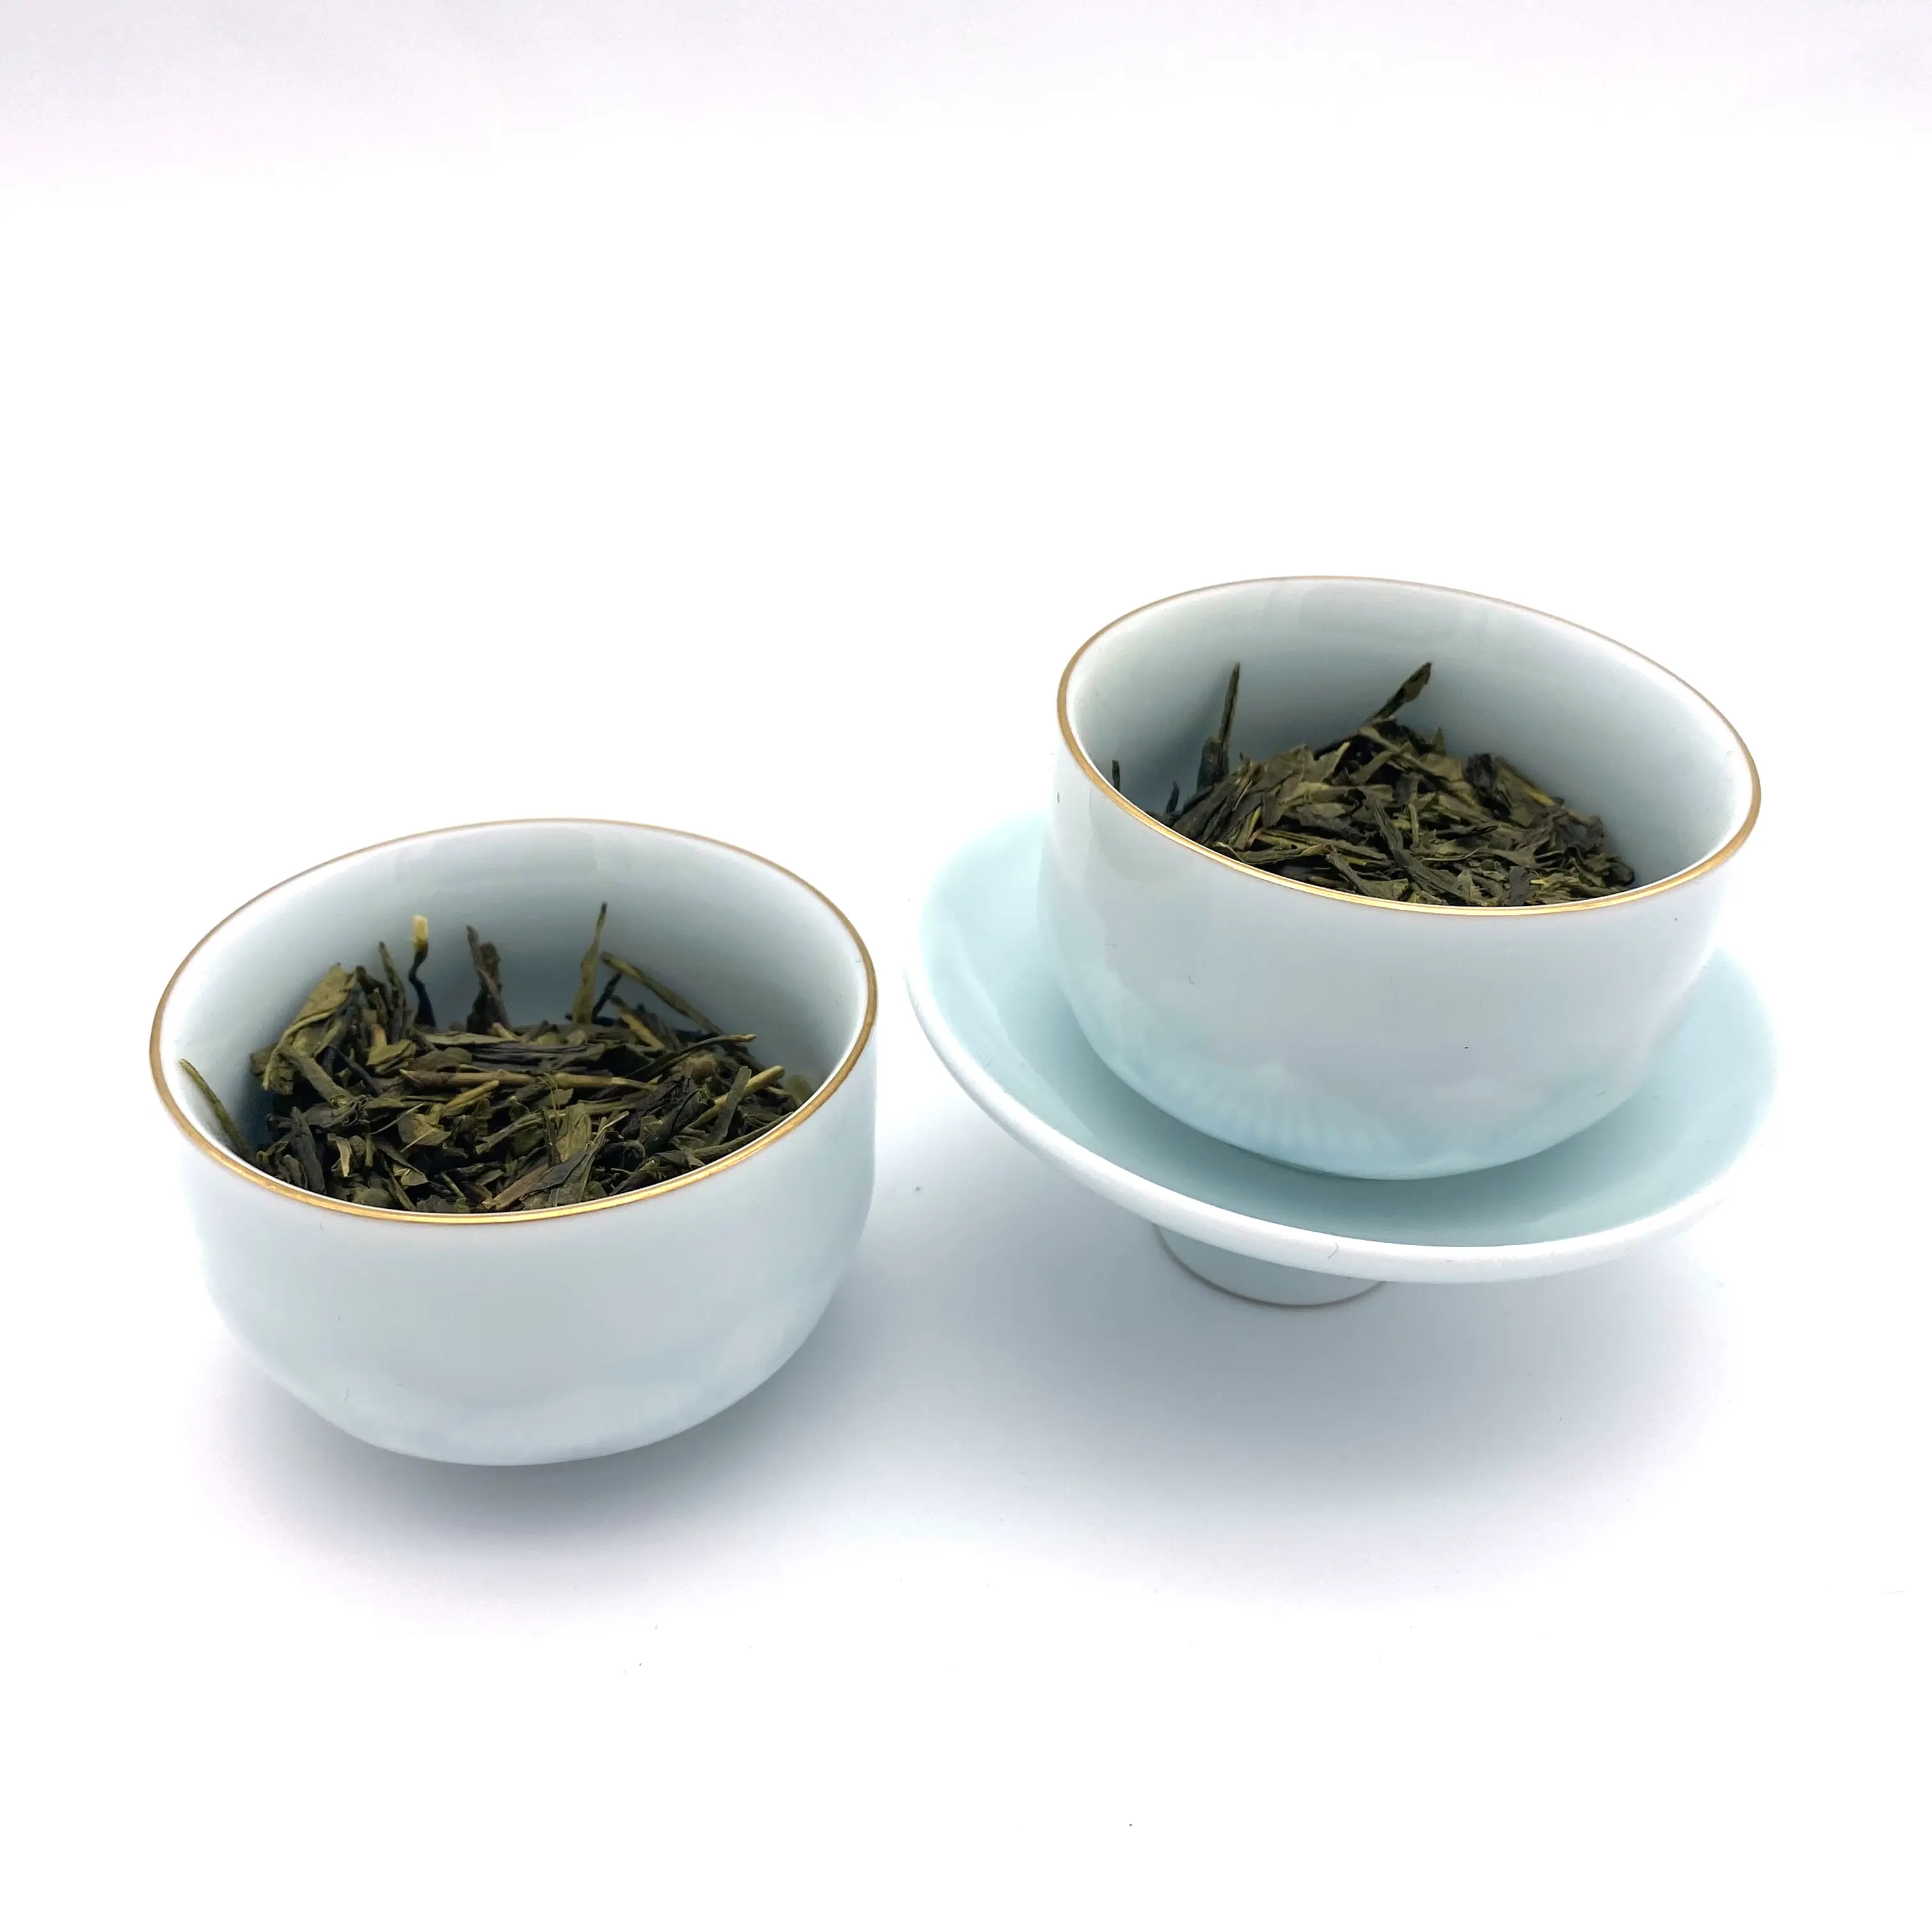 عالية الجودة والسعر المنخفض سنكا على البخار شاي أخضر قسط تبخير شاي أخضر مكتب الشاي